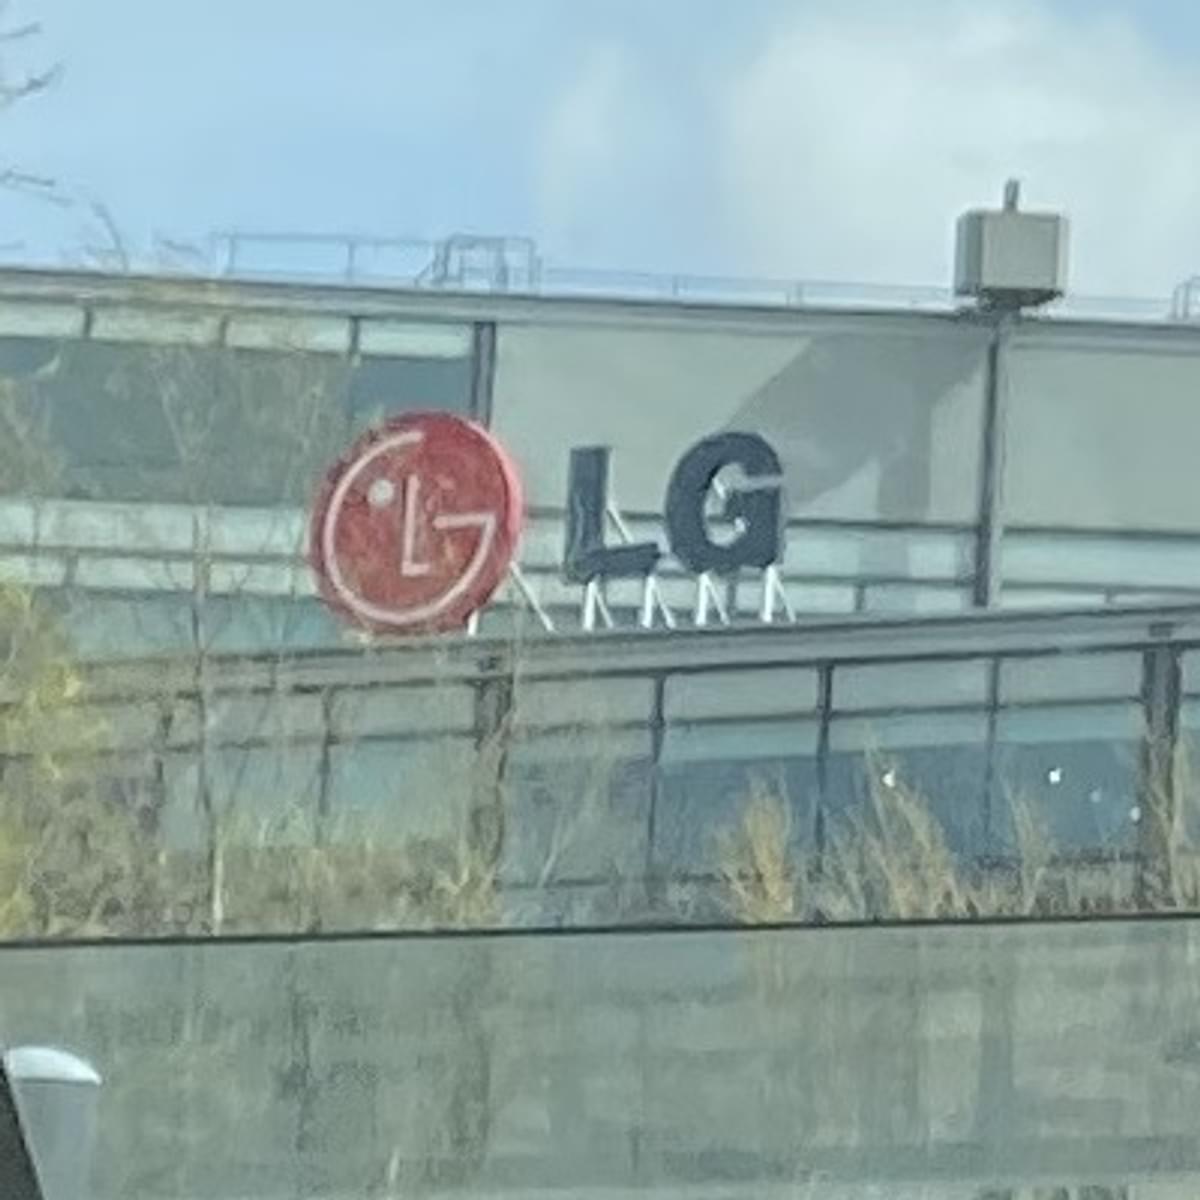 LG boekt hoogste kwartaalomzet ooit, einde van mobiele divisie image